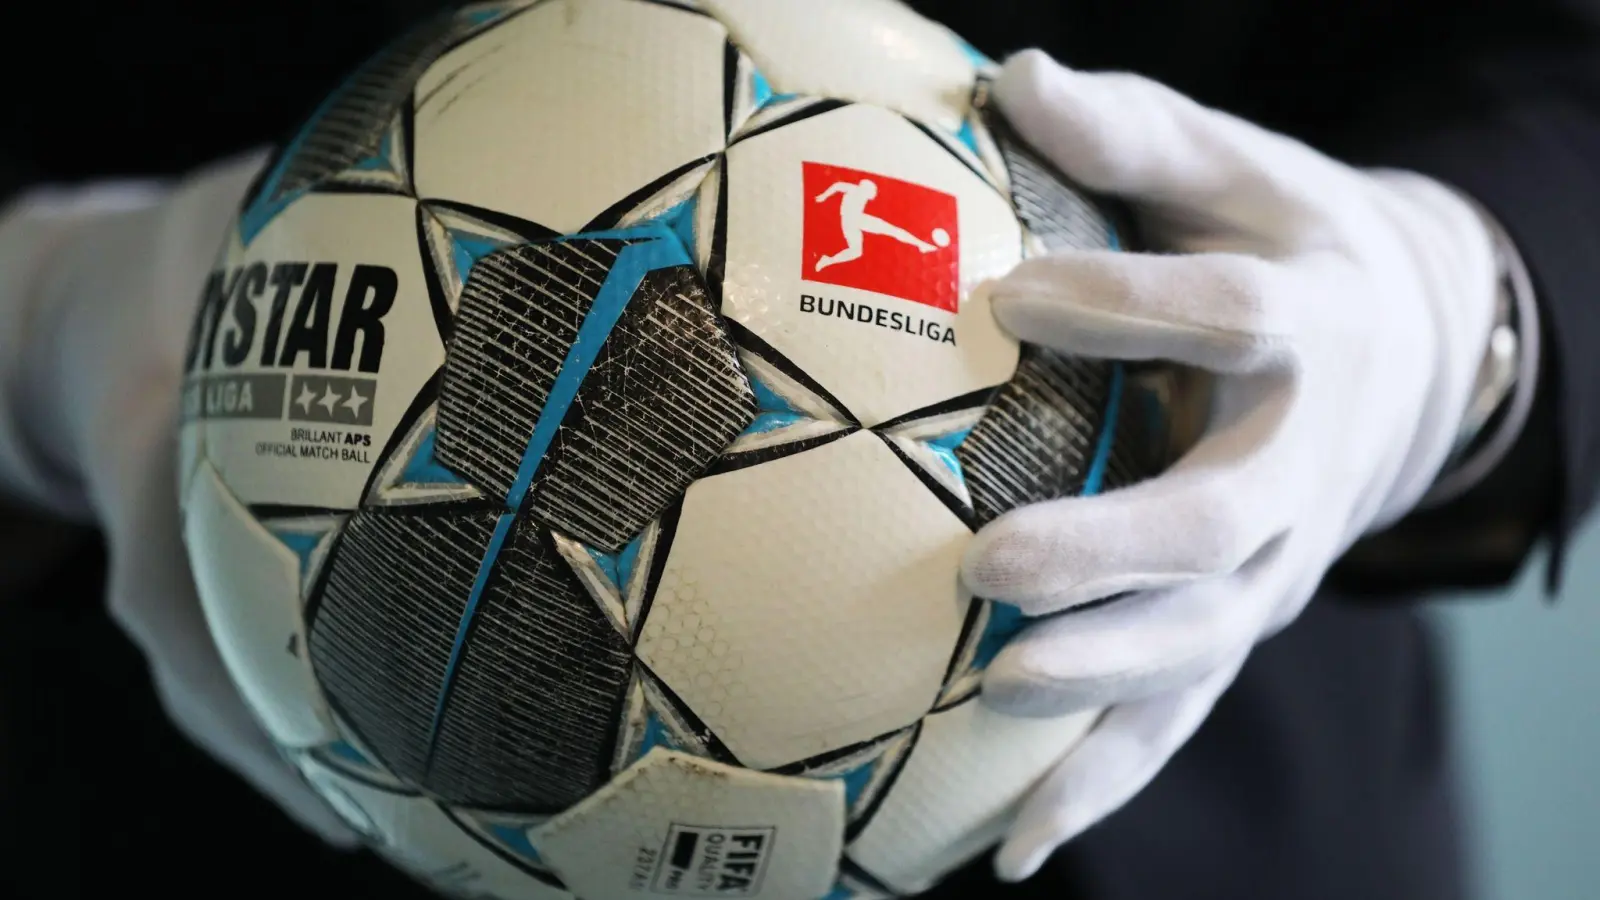 Der Fußball des ersten Geisterspiels in der Bundesliga (Borussia Mönchengladbach - 1.FC Köln). (Foto: Oliver Berg/dpa)